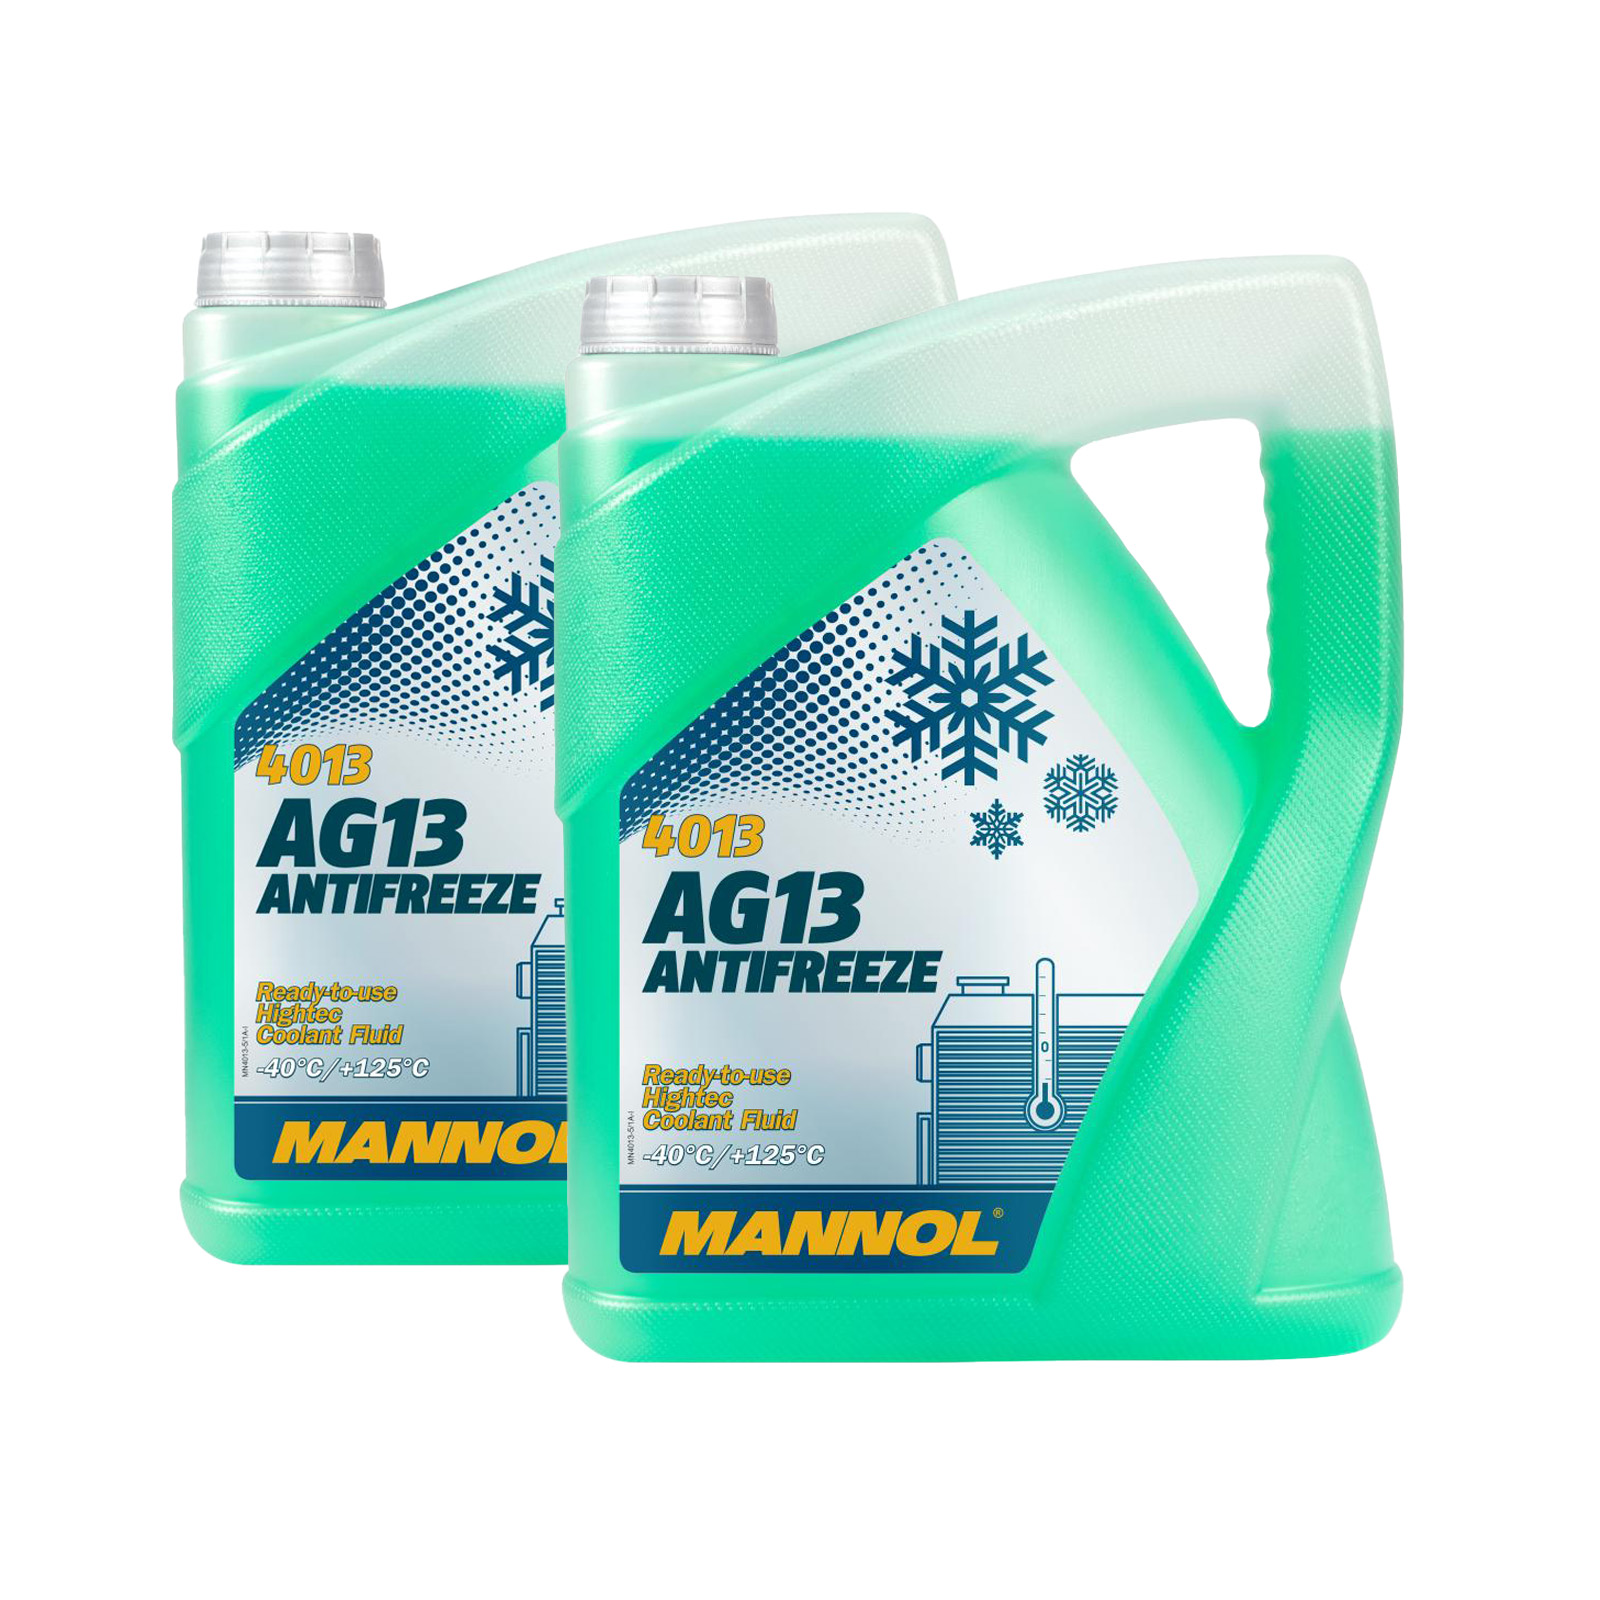 10 Liter (2x5) MANNOL hightech Antifreeze AG13 Frostschutz Fertiggemisch grün -40° G13